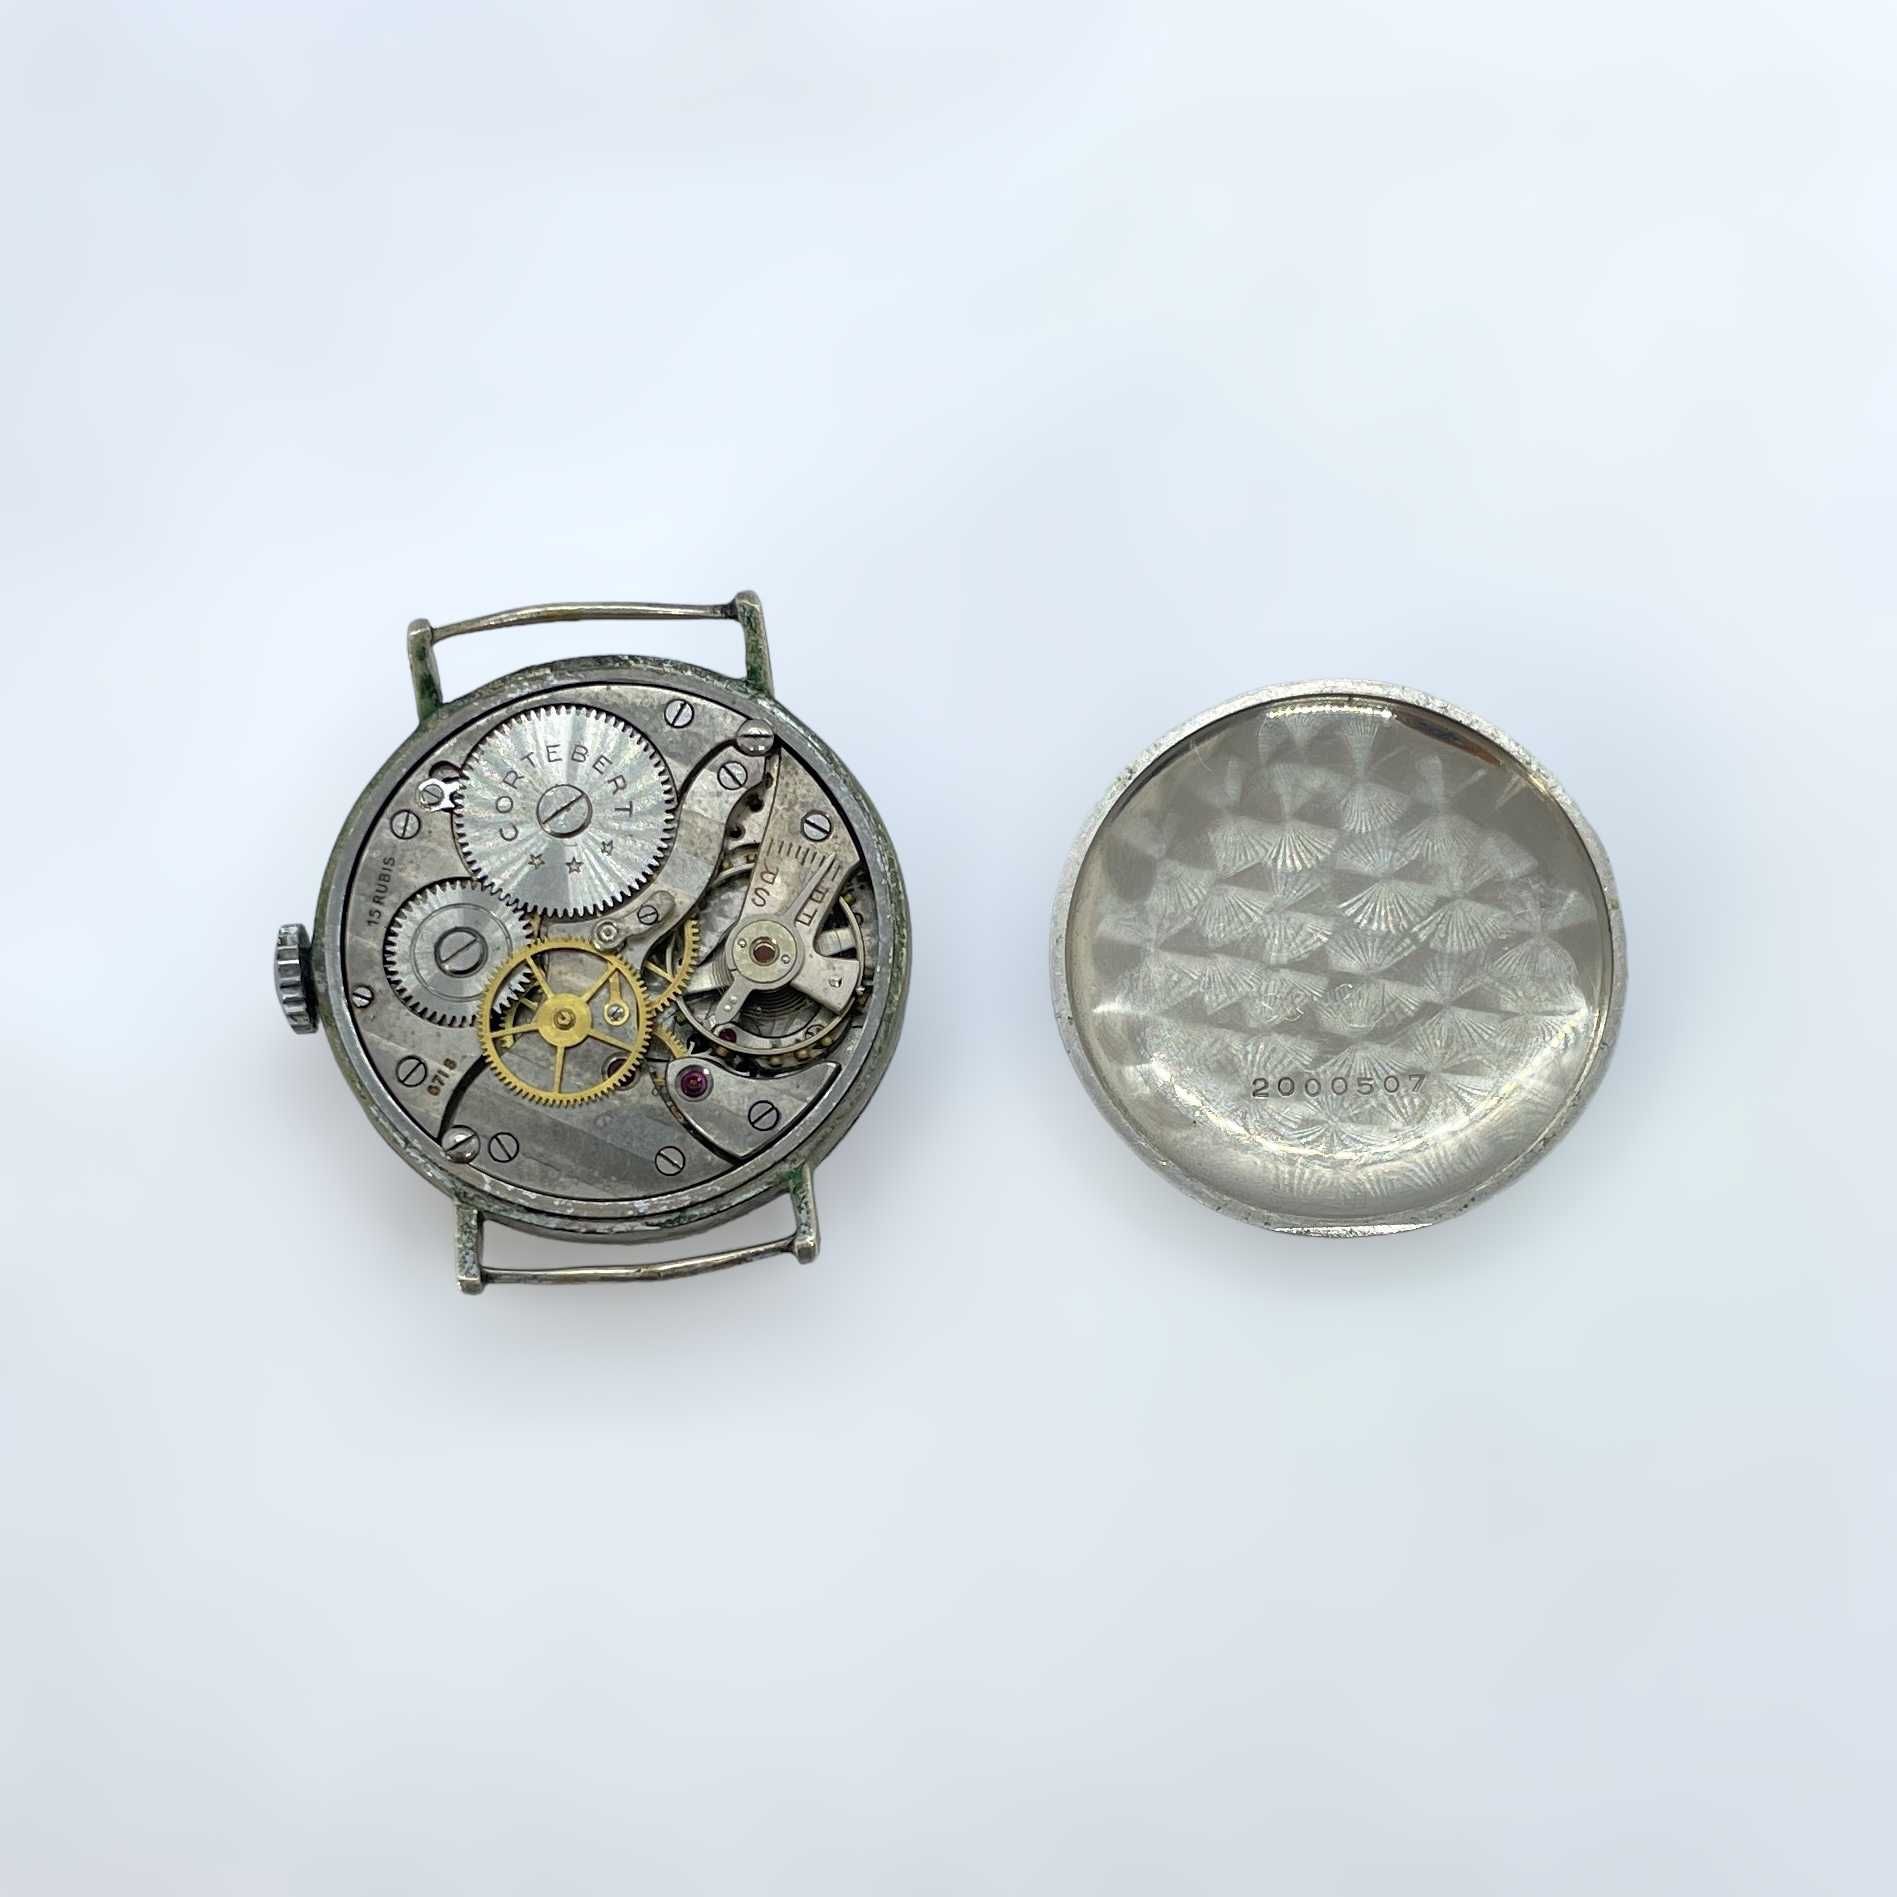 Cortebert швейцарски мъжки часовник от 1940 в оригинална кутия